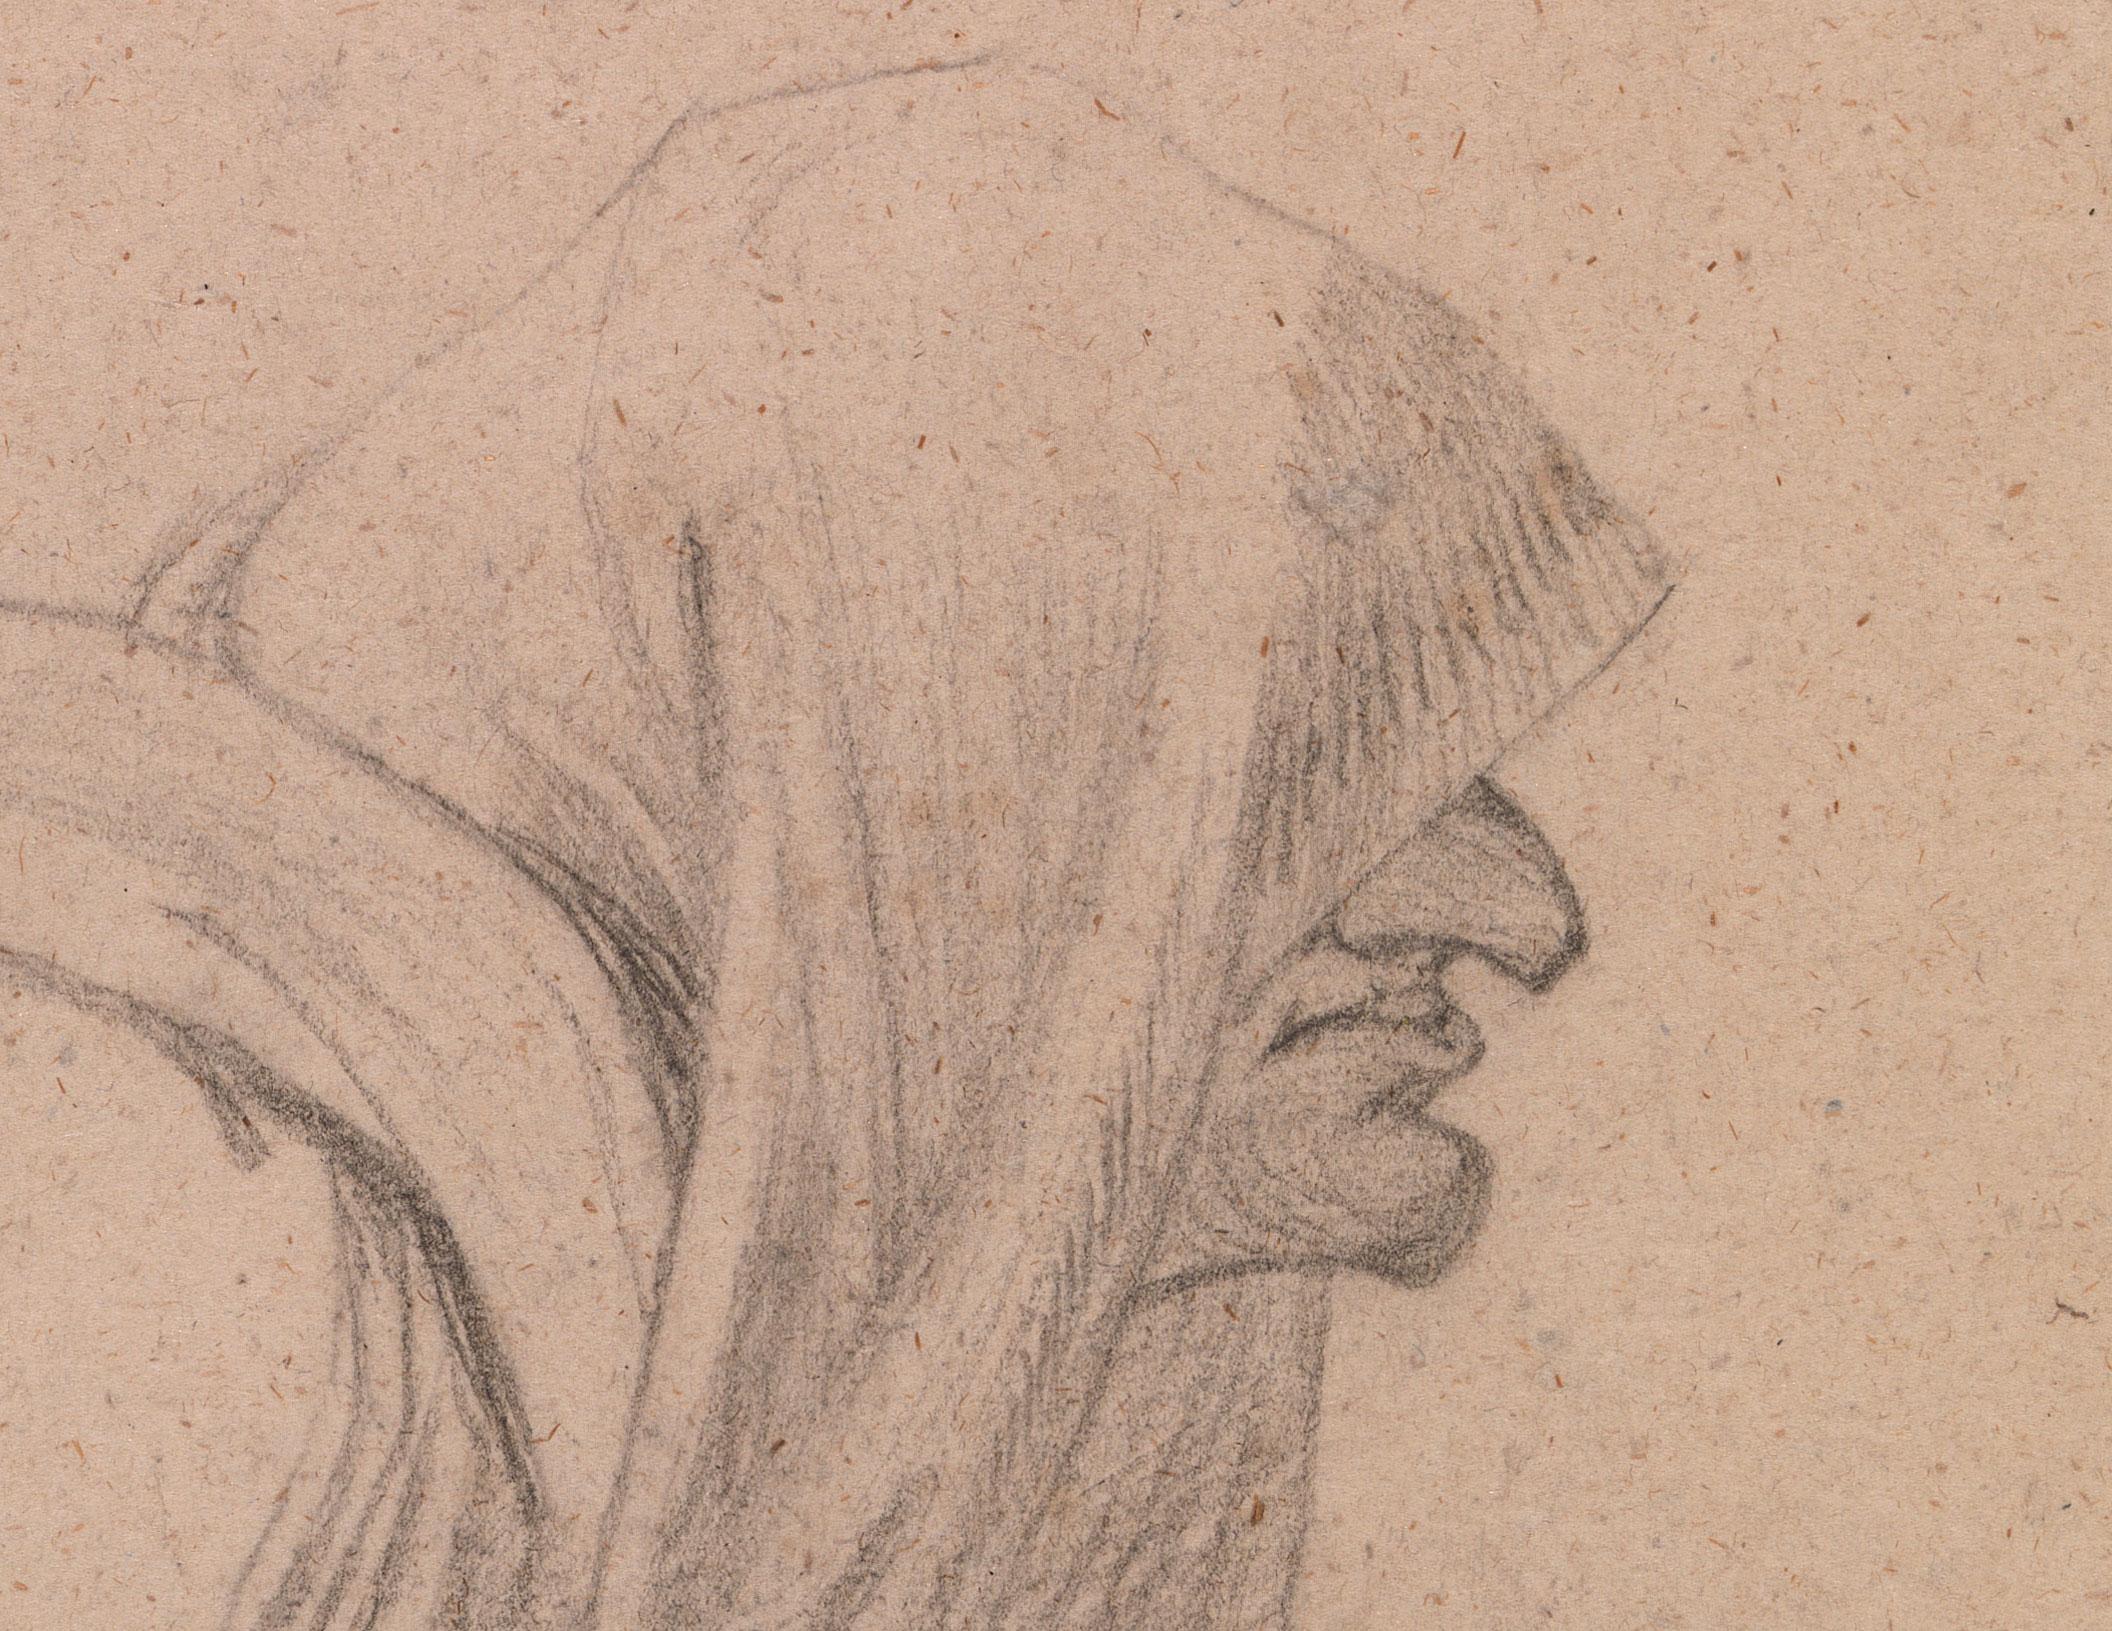 Zeichnung einer gefangenen Frau (Braun), Figurative Art, von Henry Fuseli